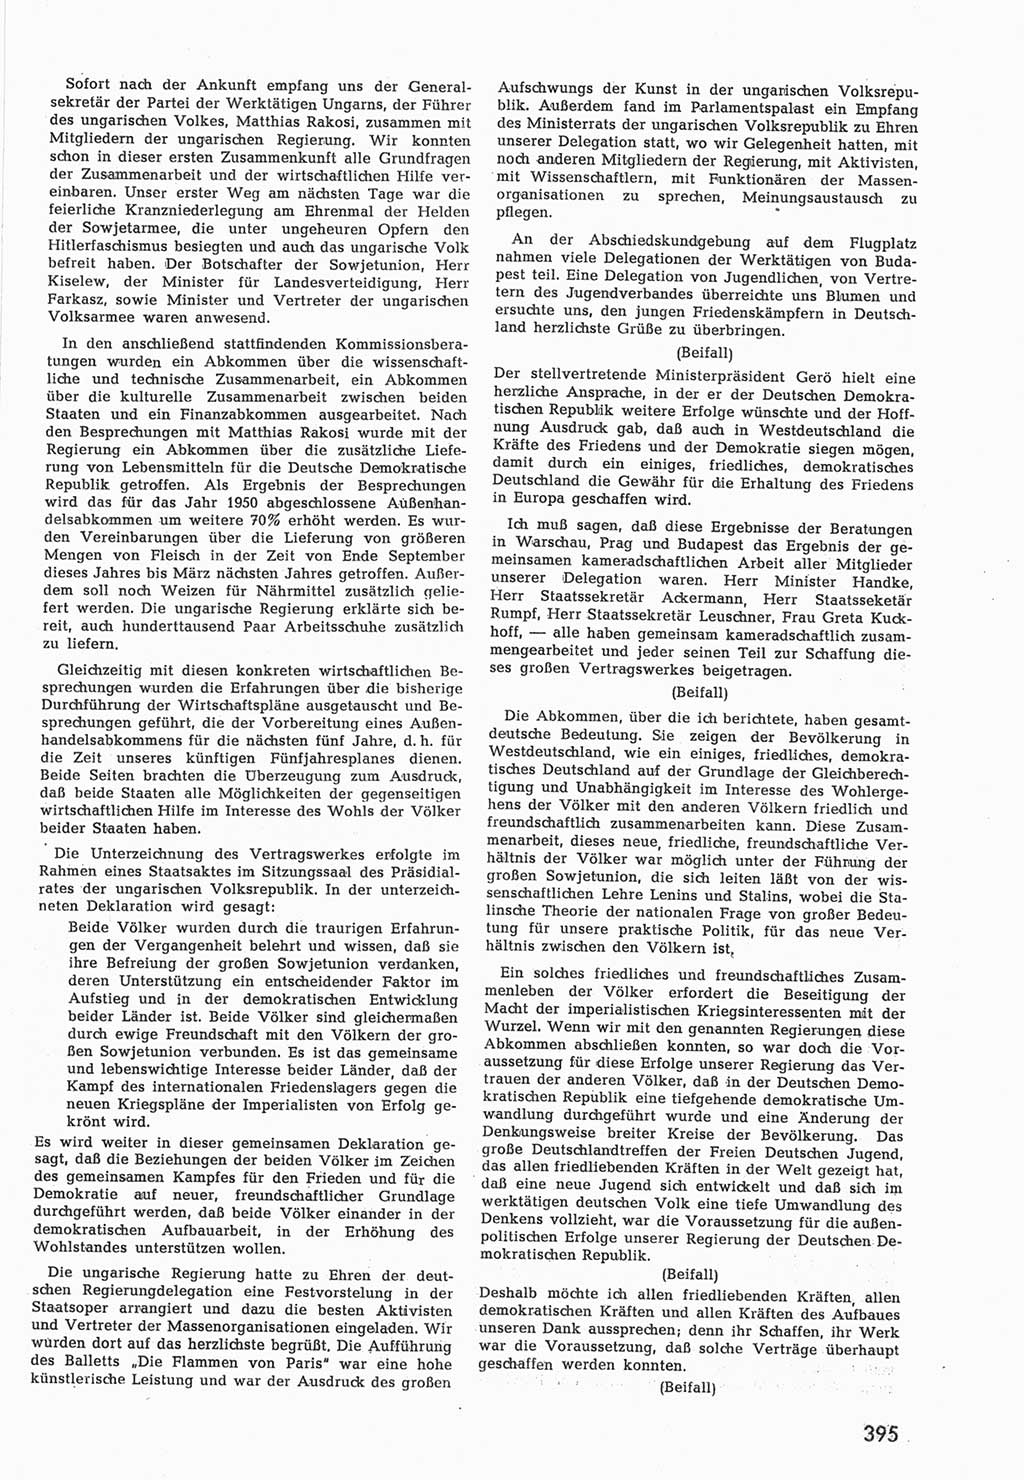 Provisorische Volkskammer (VK) der Deutschen Demokratischen Republik (DDR) 1949-1950, Dokument 413 (Prov. VK DDR 1949-1950, Dok. 413)